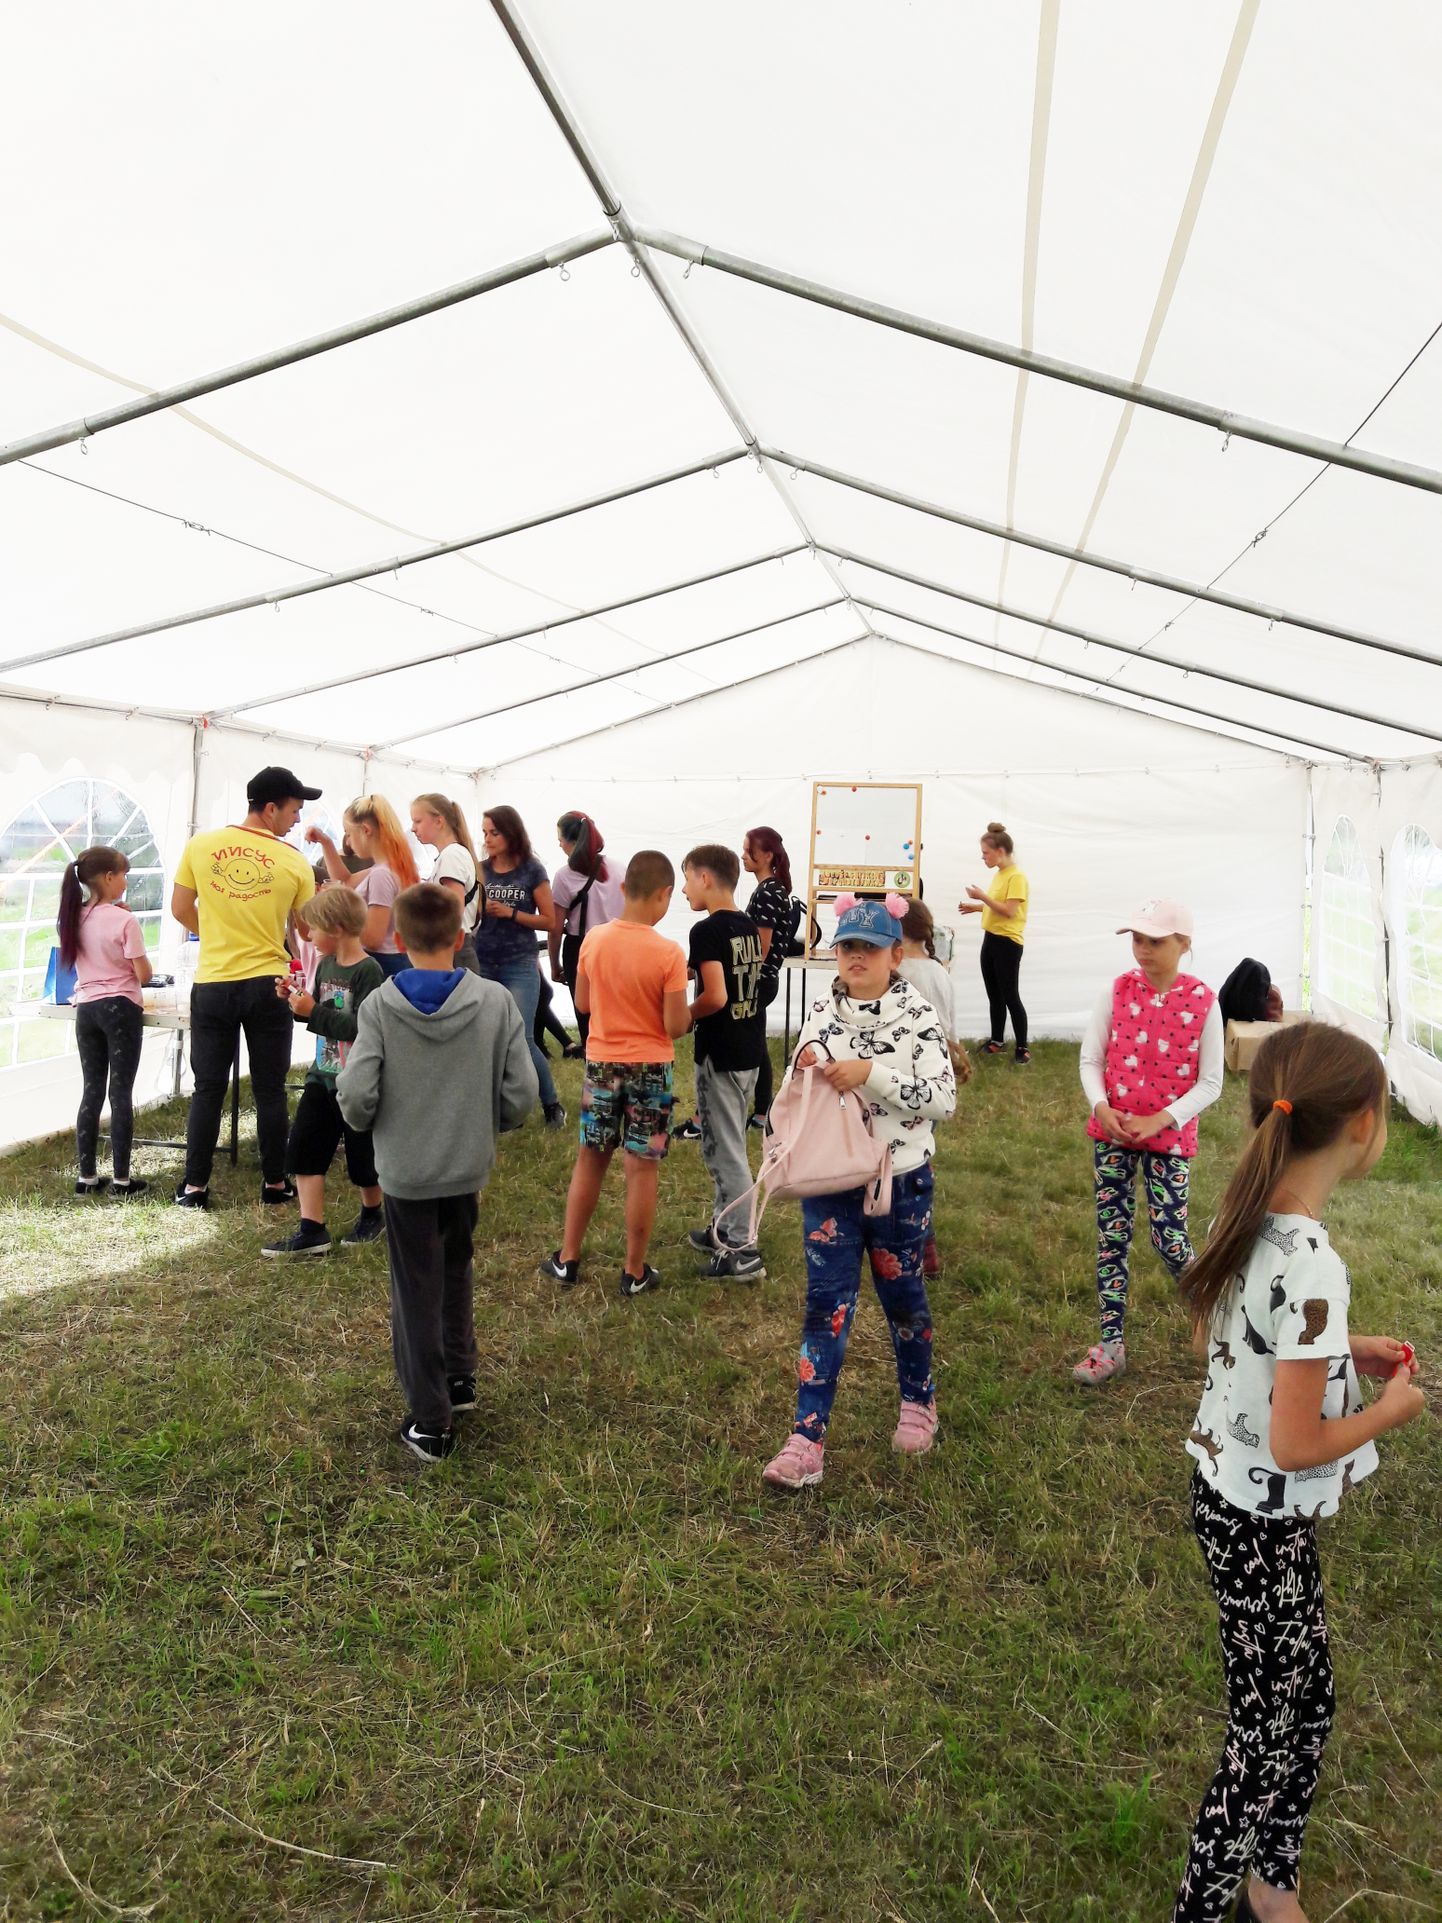 Вчера дети попрощались с лагерем (так ребята называют шатер). Они надеются, что следующим летом он снова откроется.